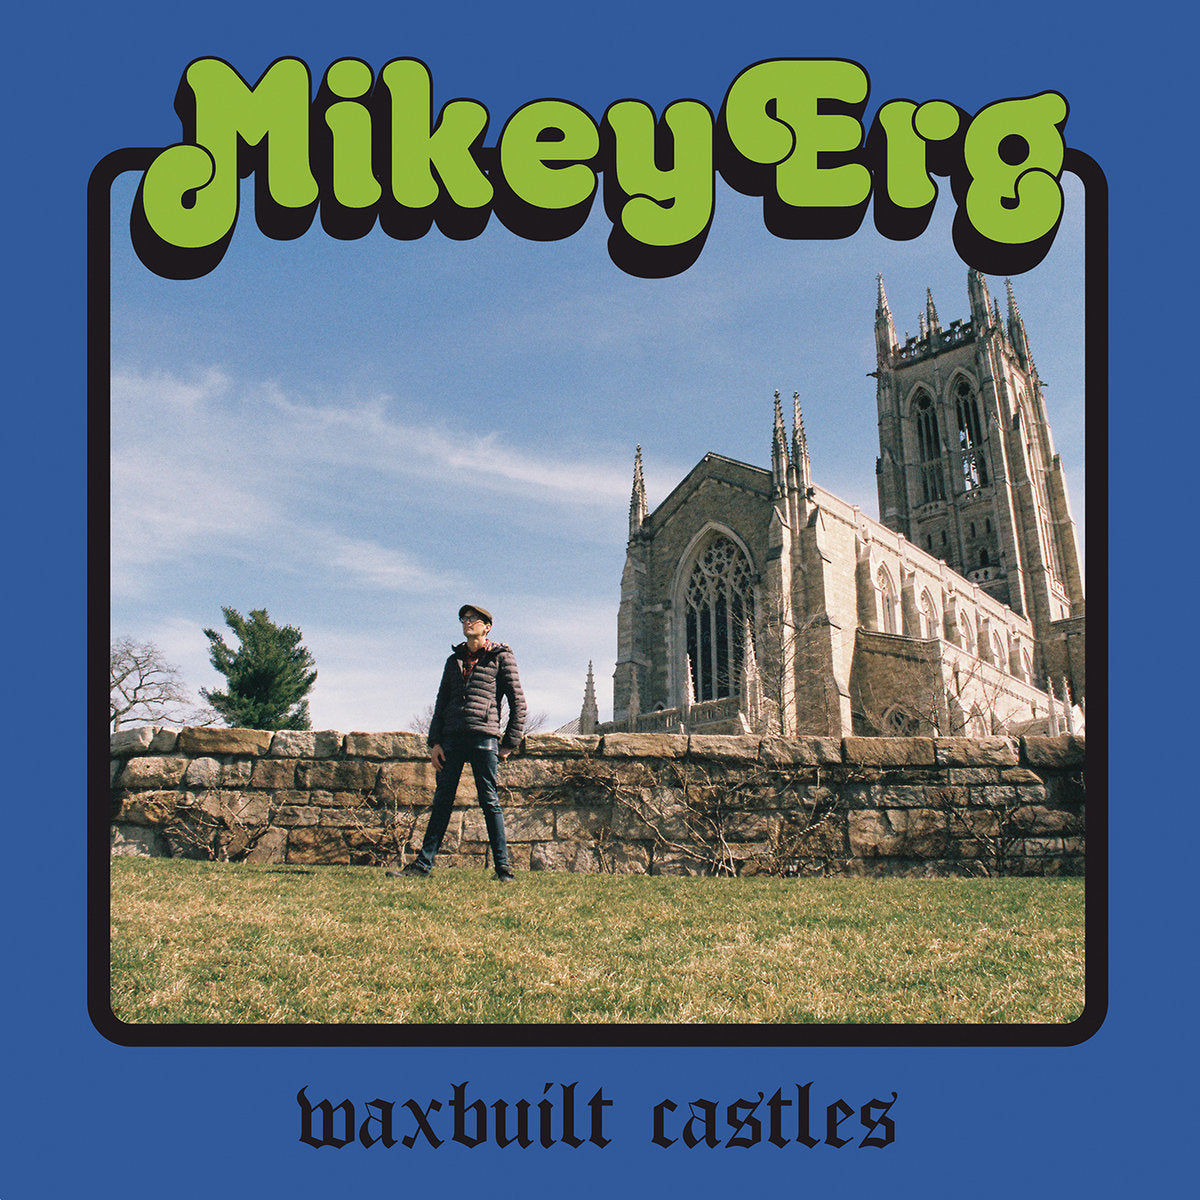 Mikey Erg "Waxbuilt Castles" 12" Vinyl